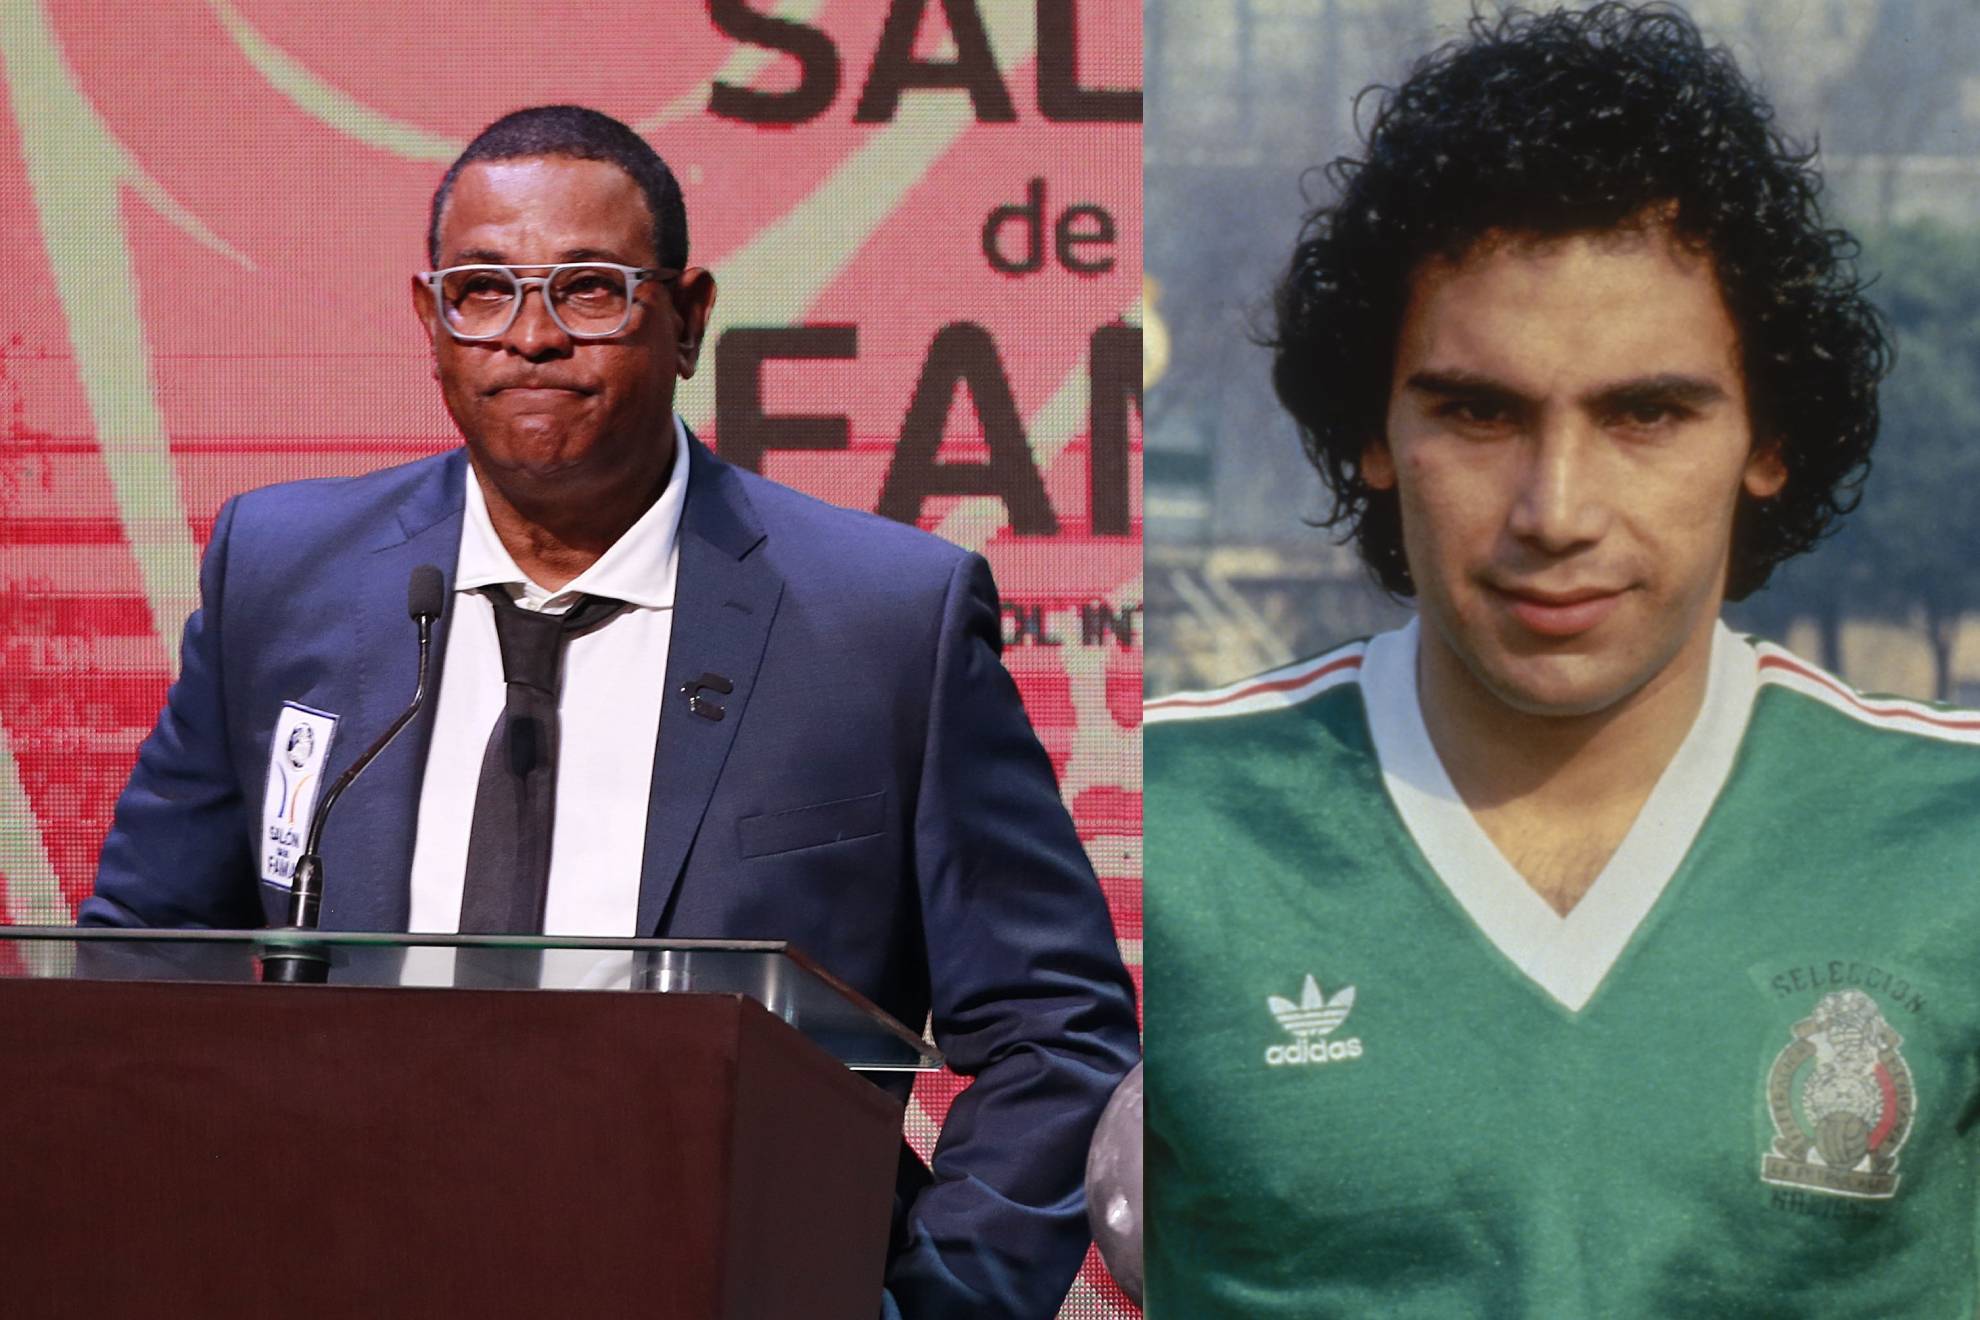 Antonio Carlos Santos despotric contra Hugo Snchez: "Es soberbio y mala leche"